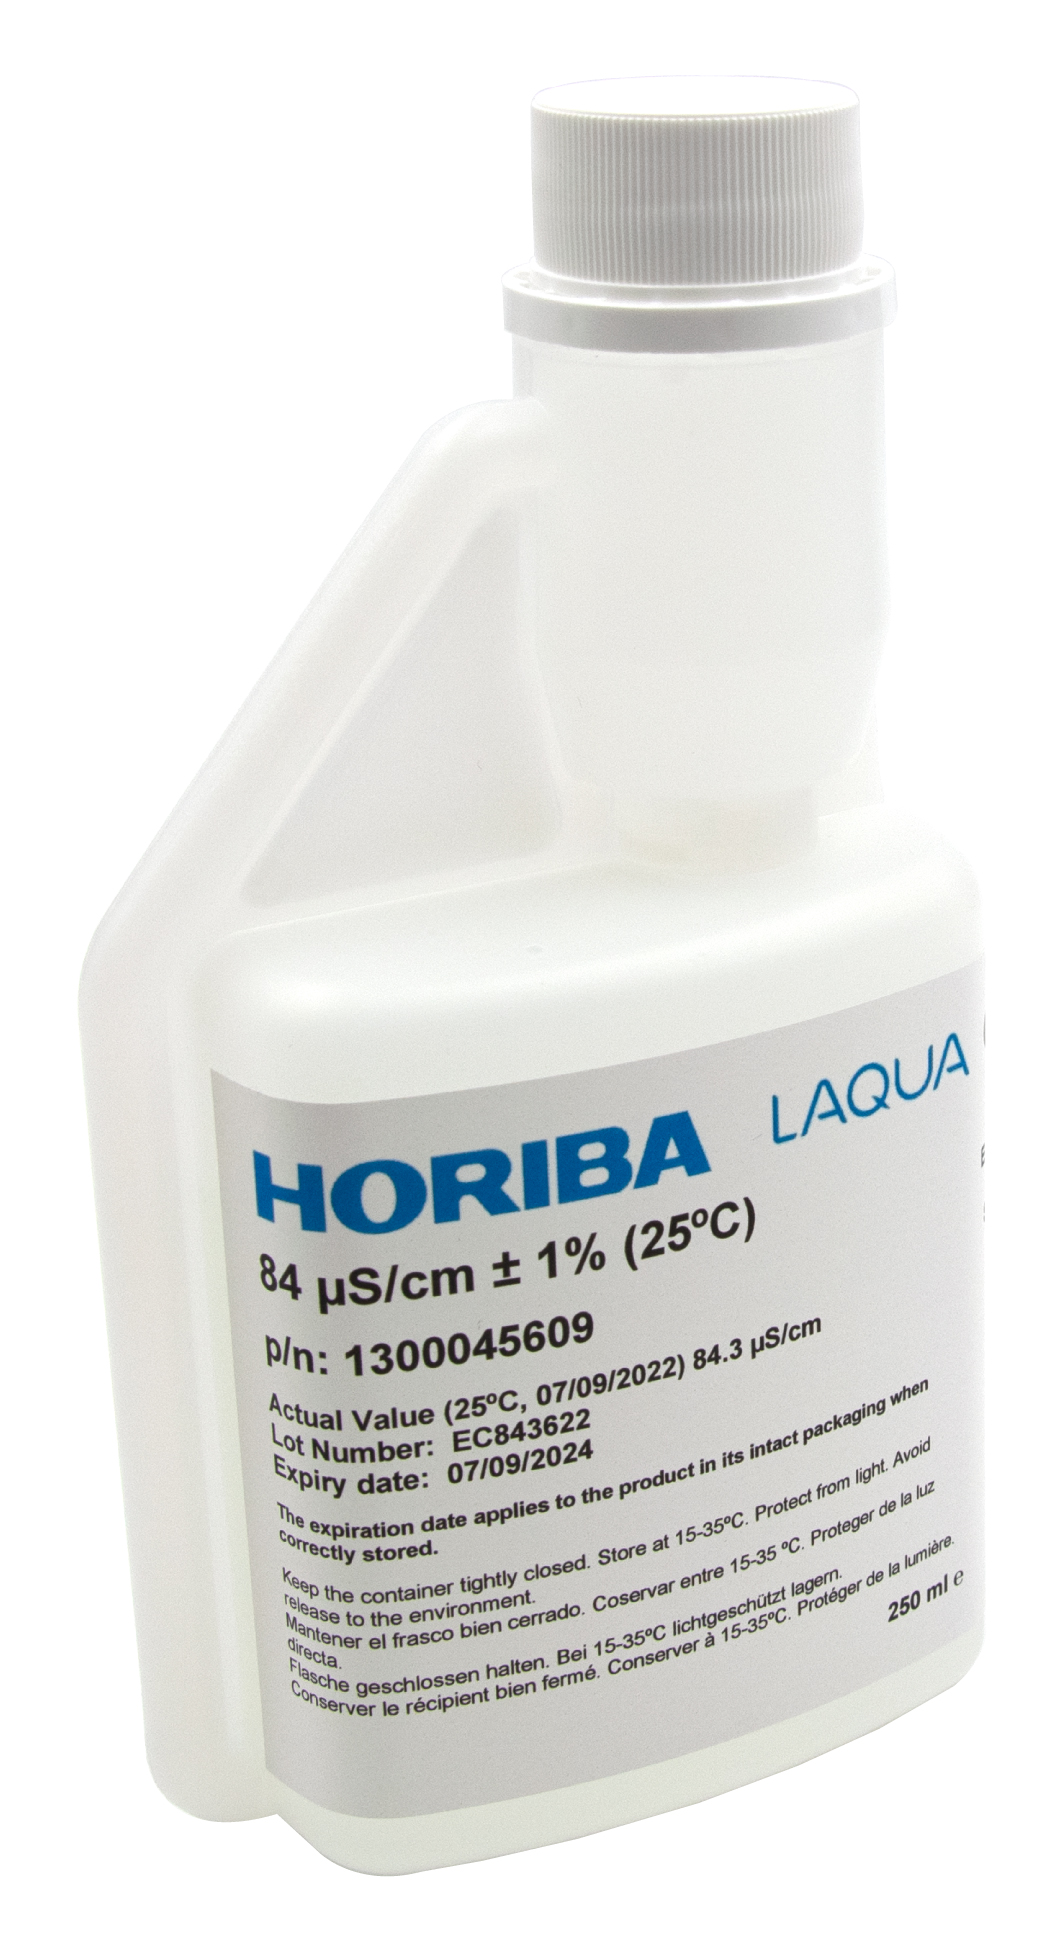 HORIBA 84 μS/cm Leitfähigkeitskalibrierlösung 250ml (250-EC-84)